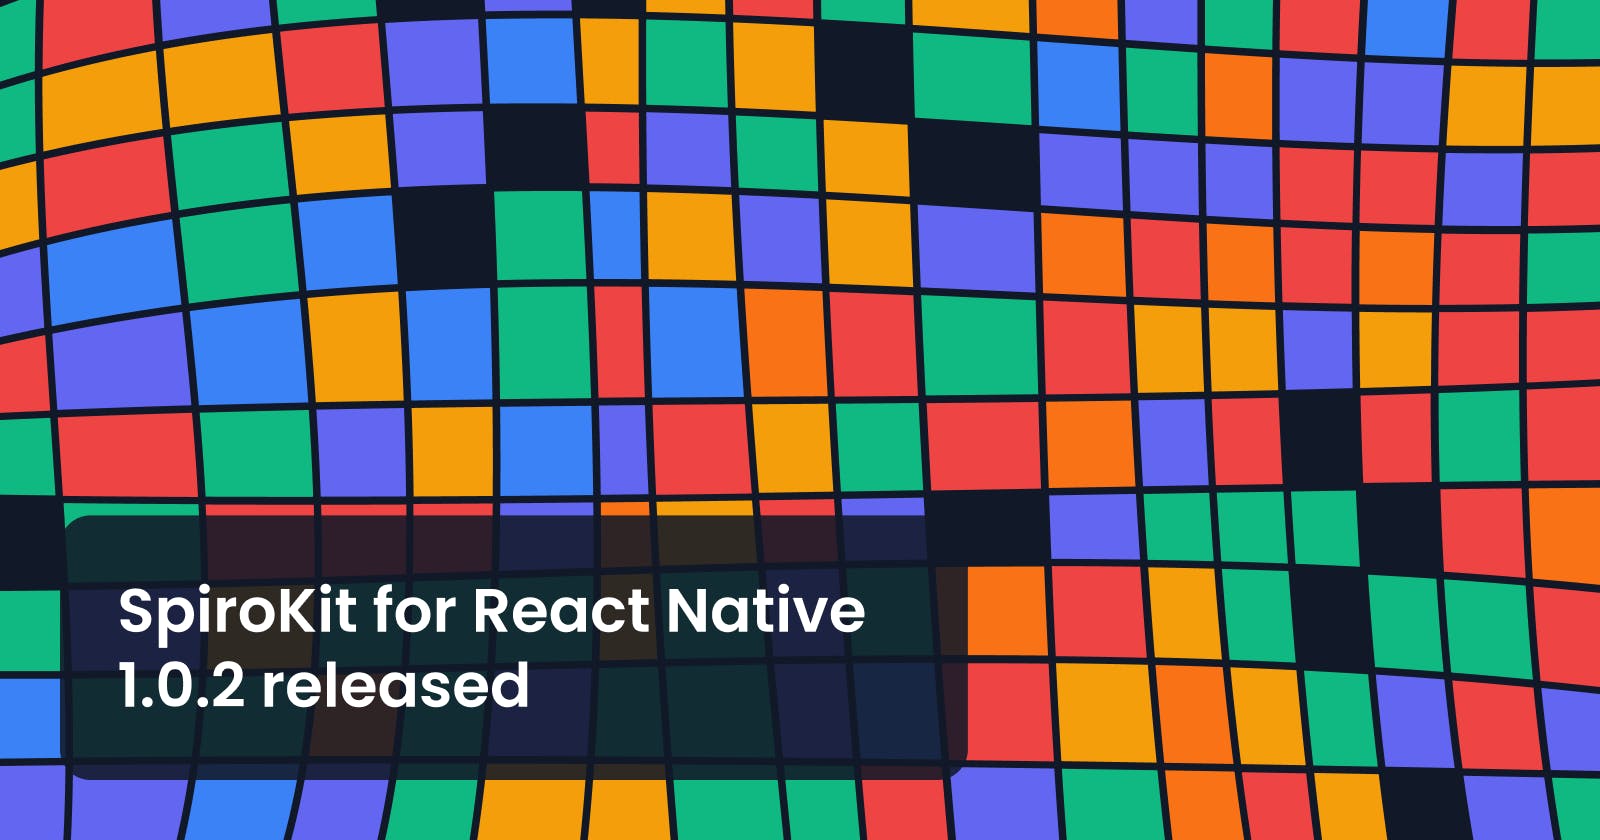 SpiroKit for React Native 1.0.2 released